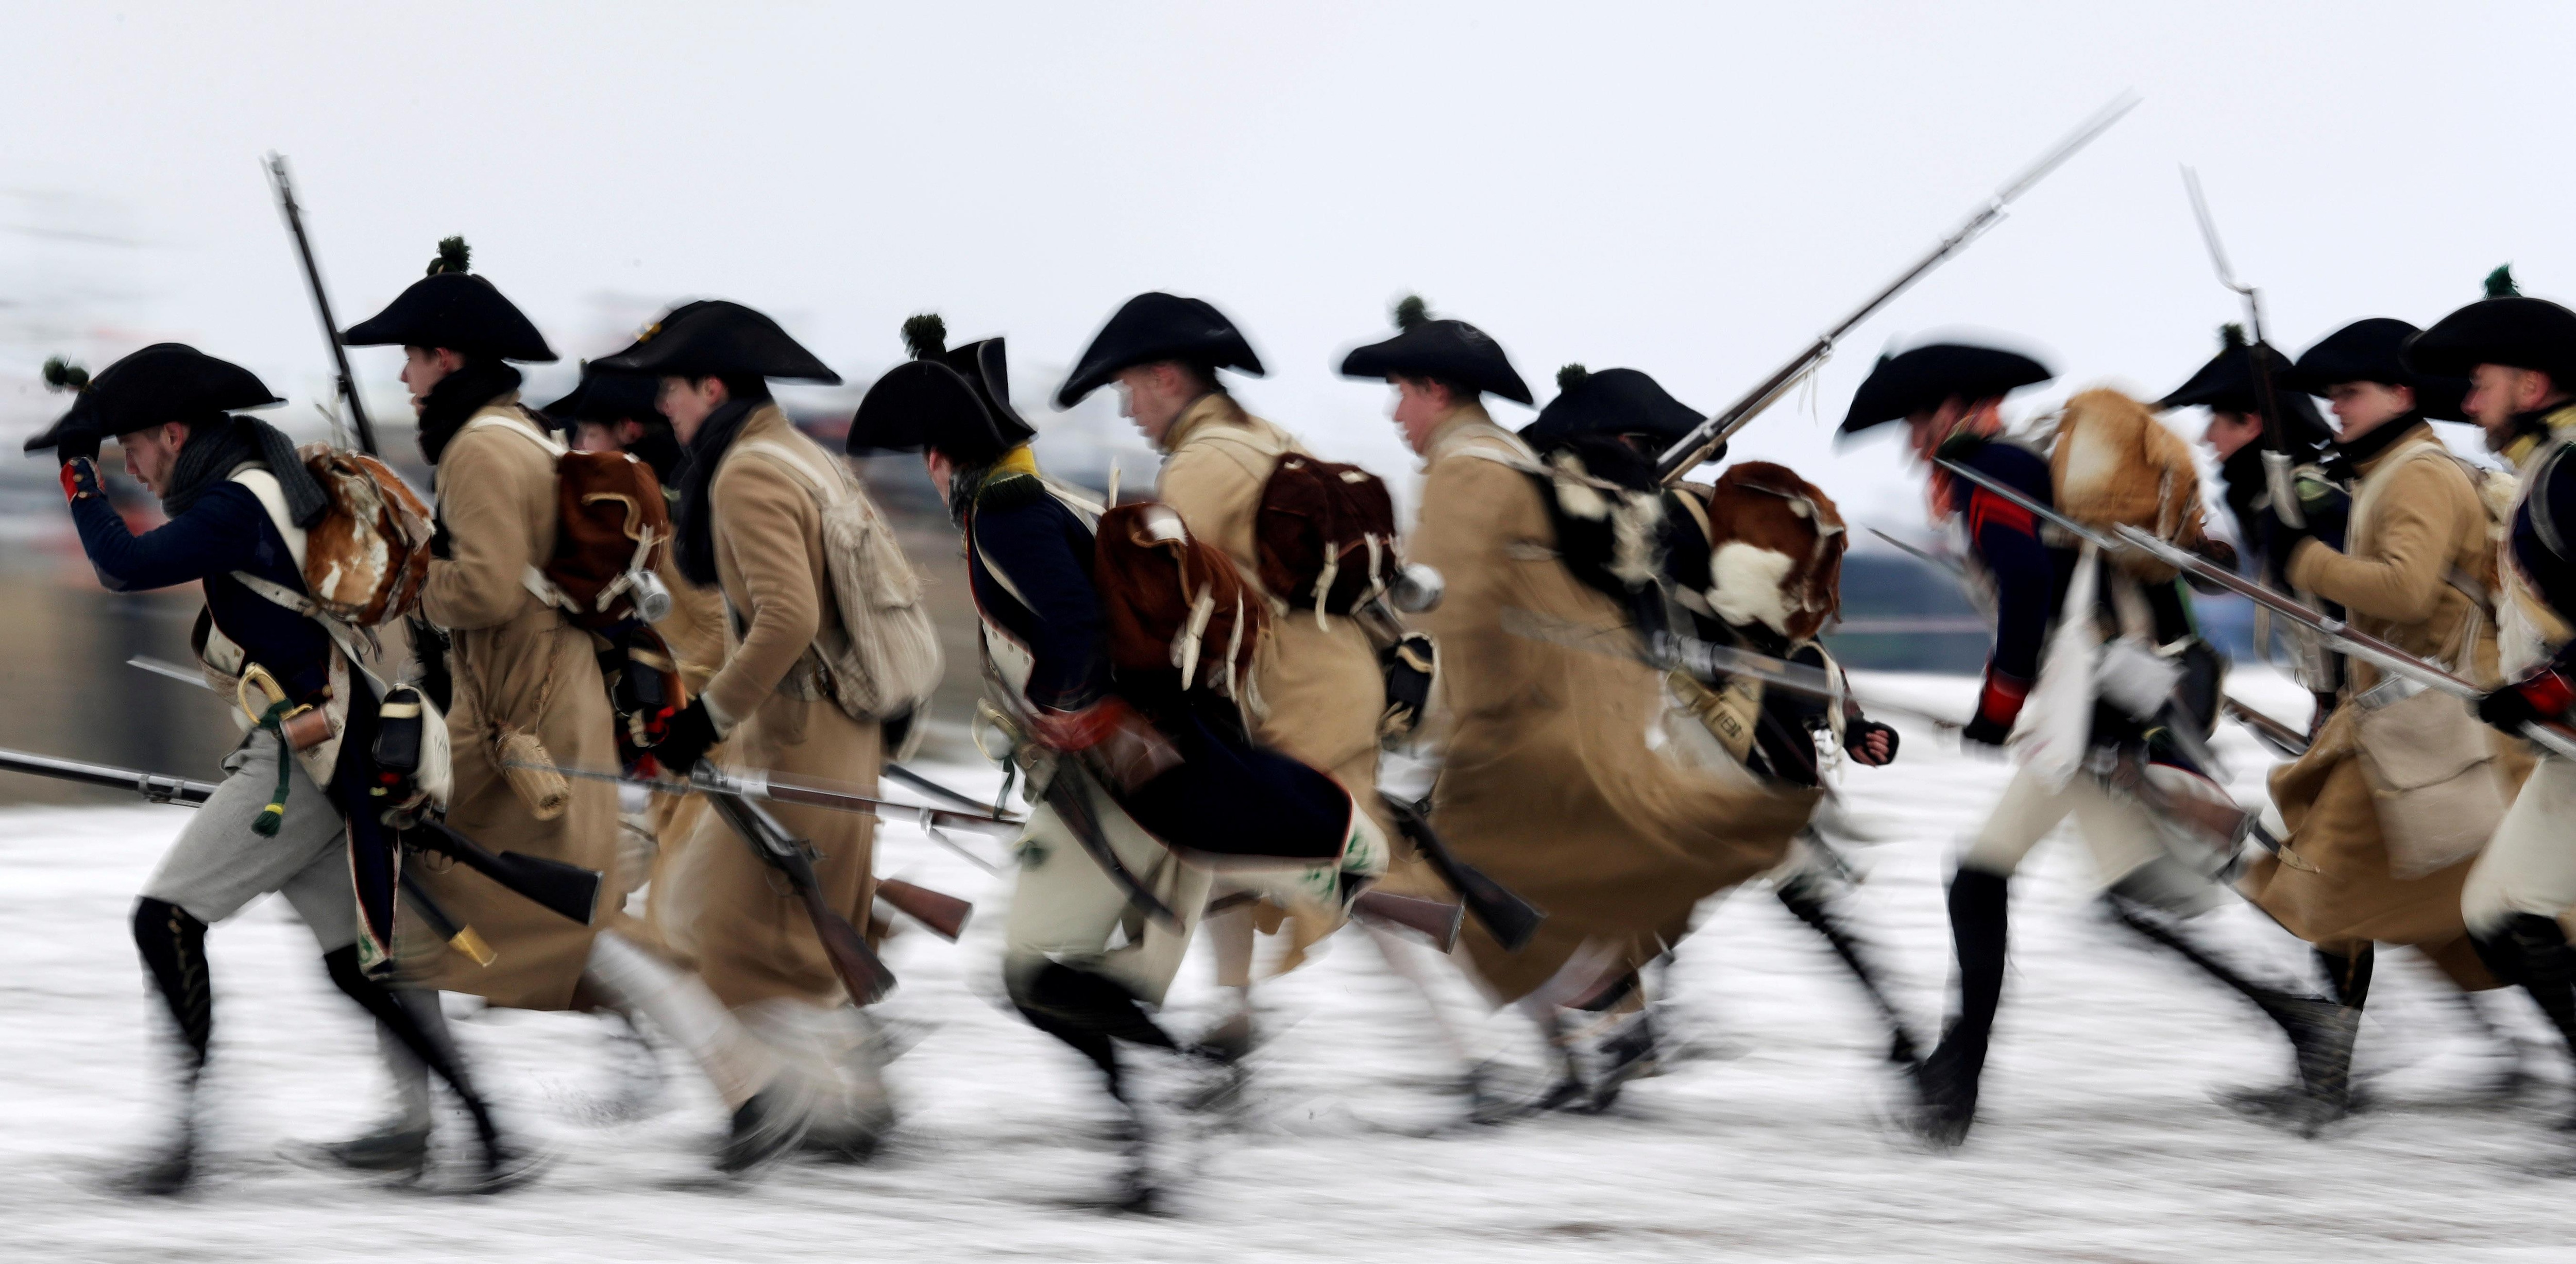 Photo d'hiver qui montre des hommes habillés en soldats d'époque courant dans la neige.